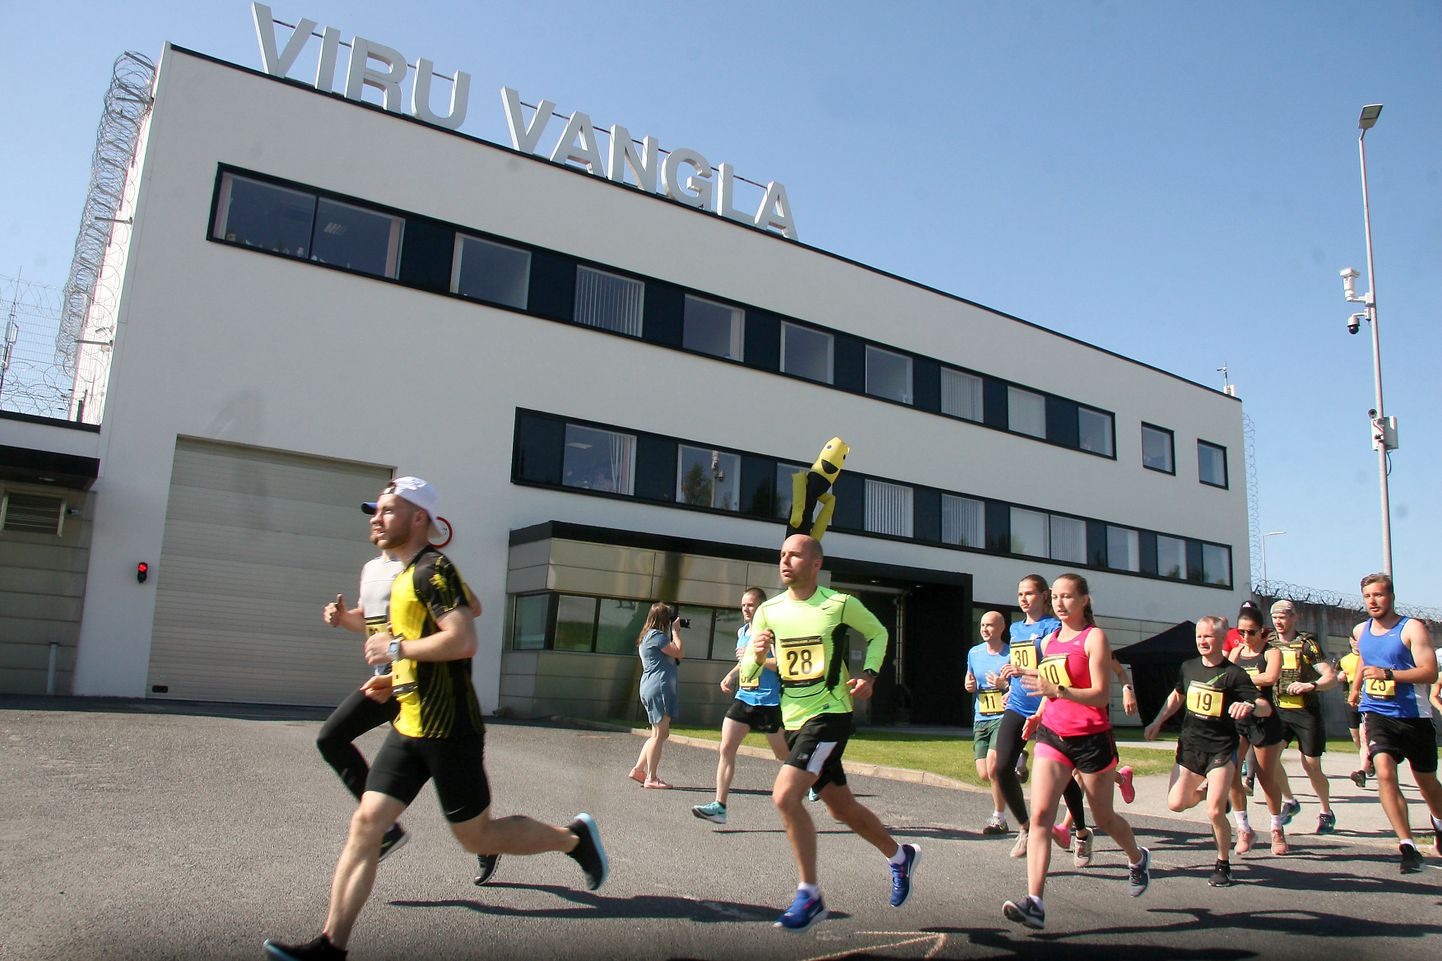 10 km rada viib jooksjad ka Viru vangla juurde, aga jooksude stardid ja finiš ning muud üritused on reedel koondunud uuele Jõhvi staadionile ja selle lähiümbrusesse.